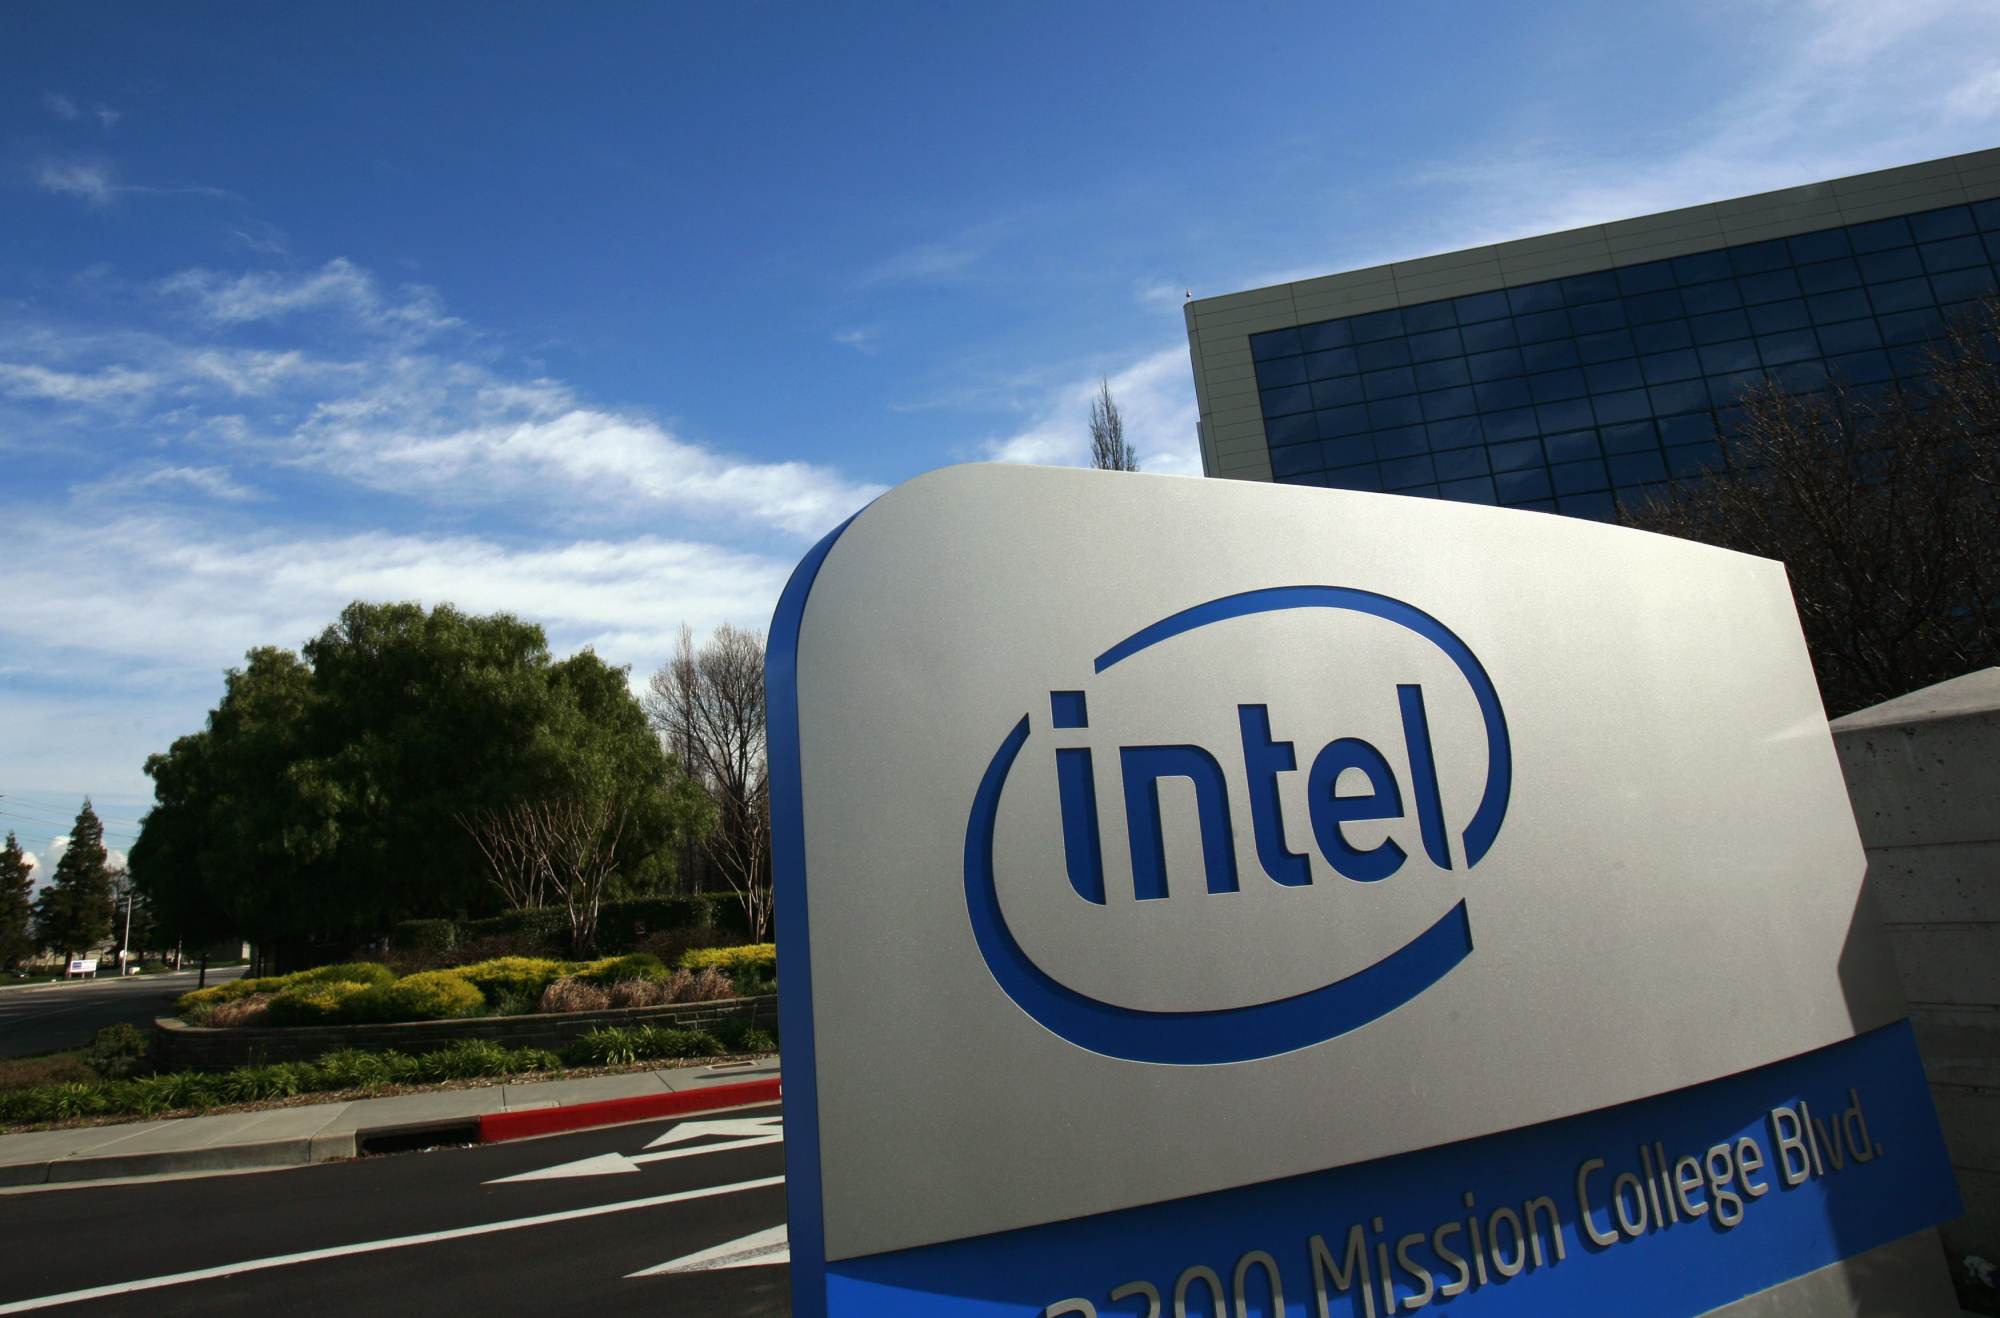 Кабинет интел. Фирма Intel. Корпорация Intel. Здание Интел. Intel американская компания.